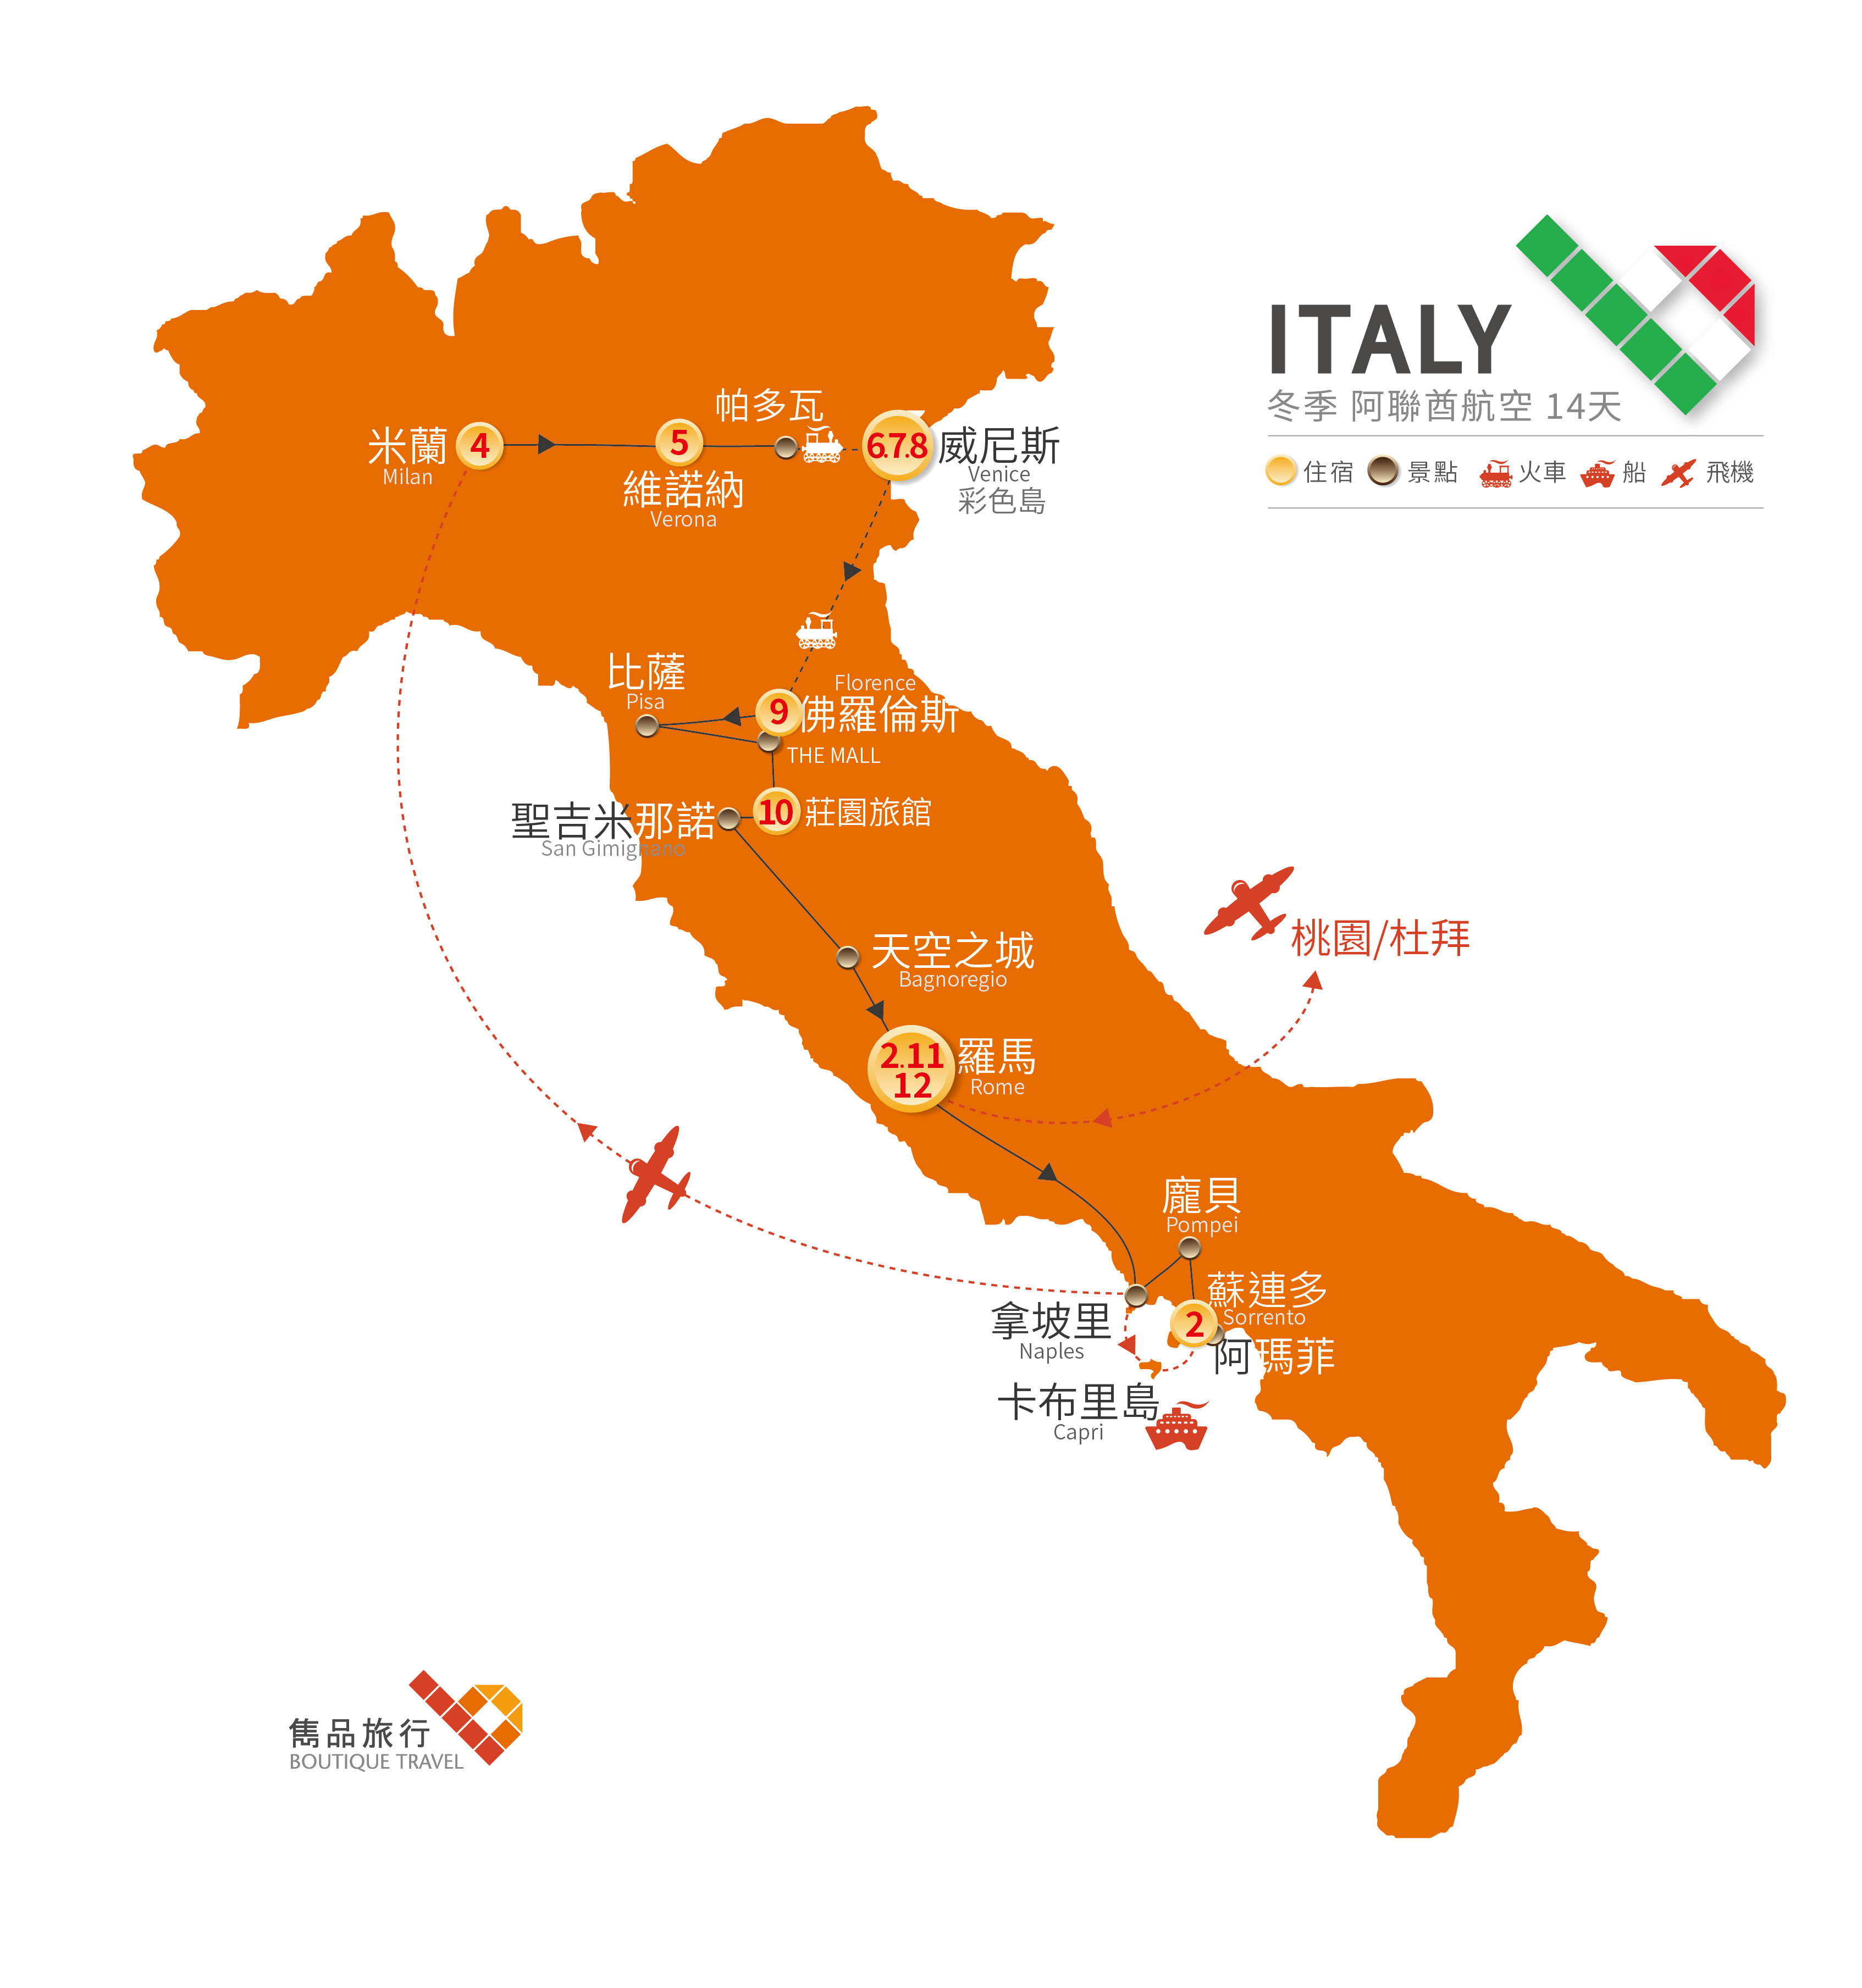 義大利 旅行地圖-冬季 獨享浪漫 義大利 14天